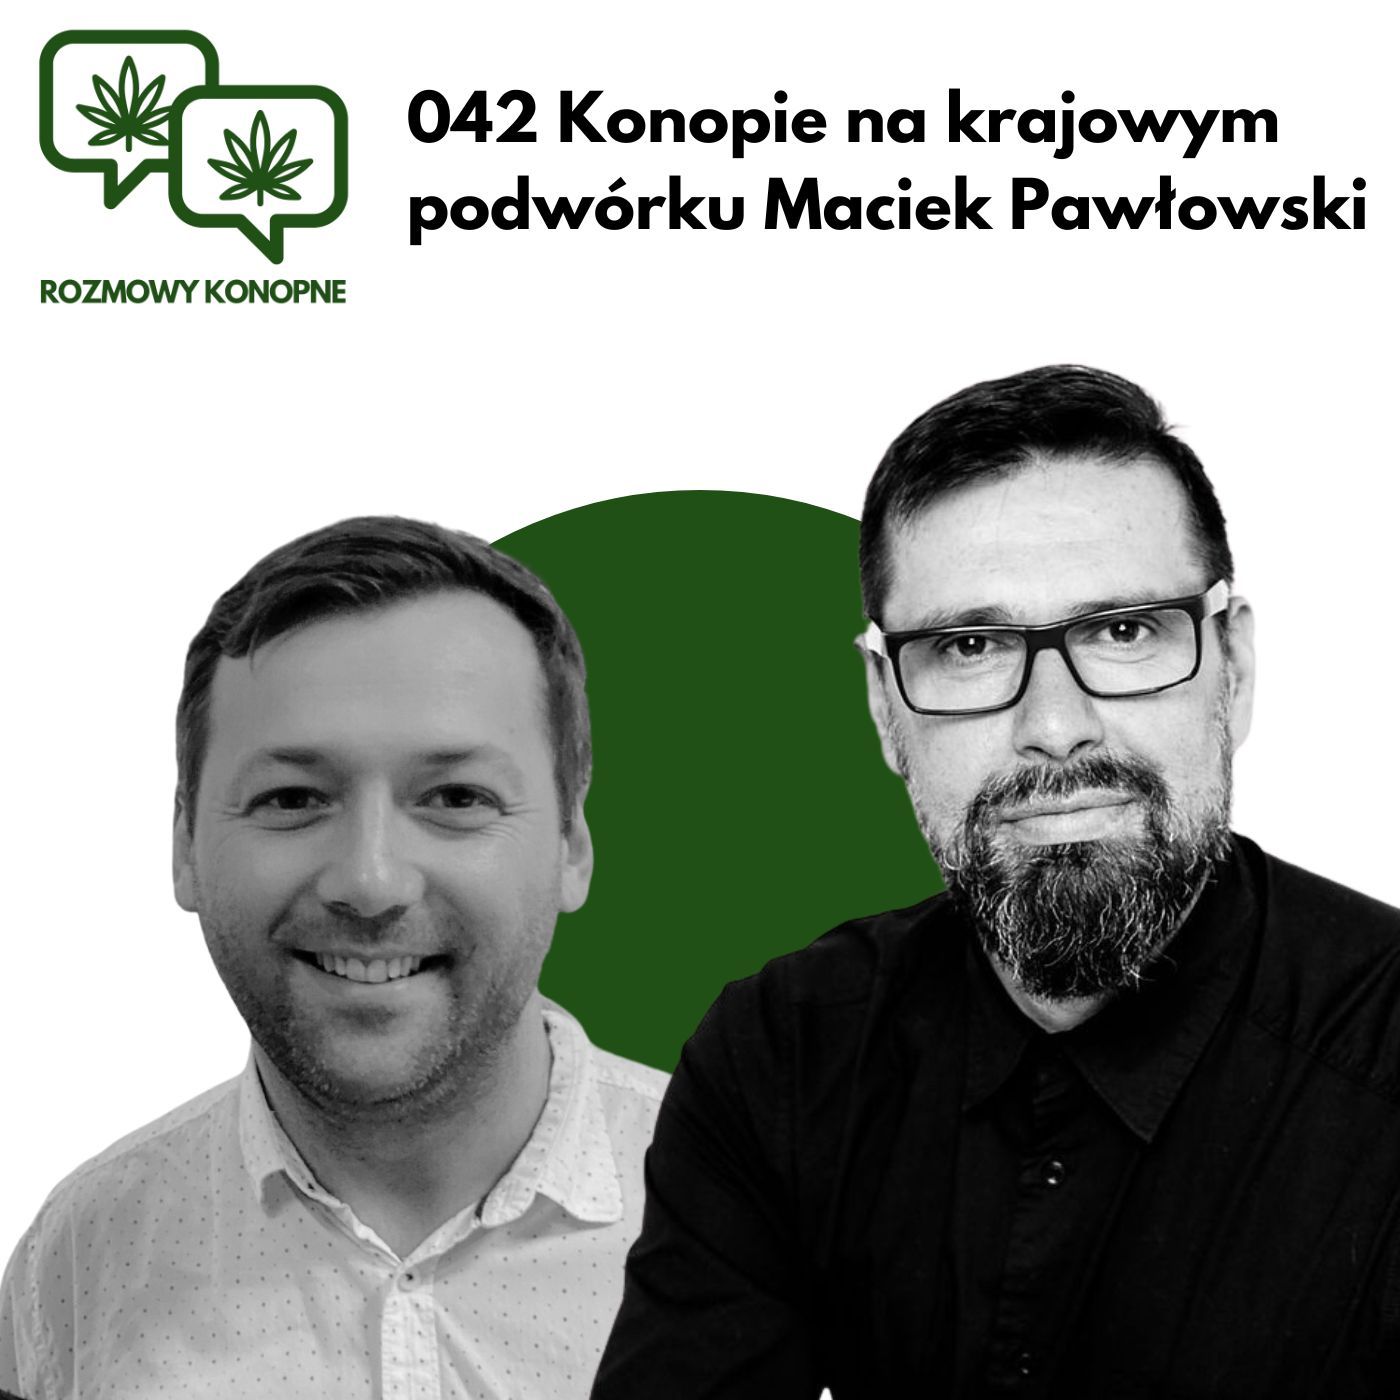 042 Konopie na krajowym podwórku Maciek Pawłowski